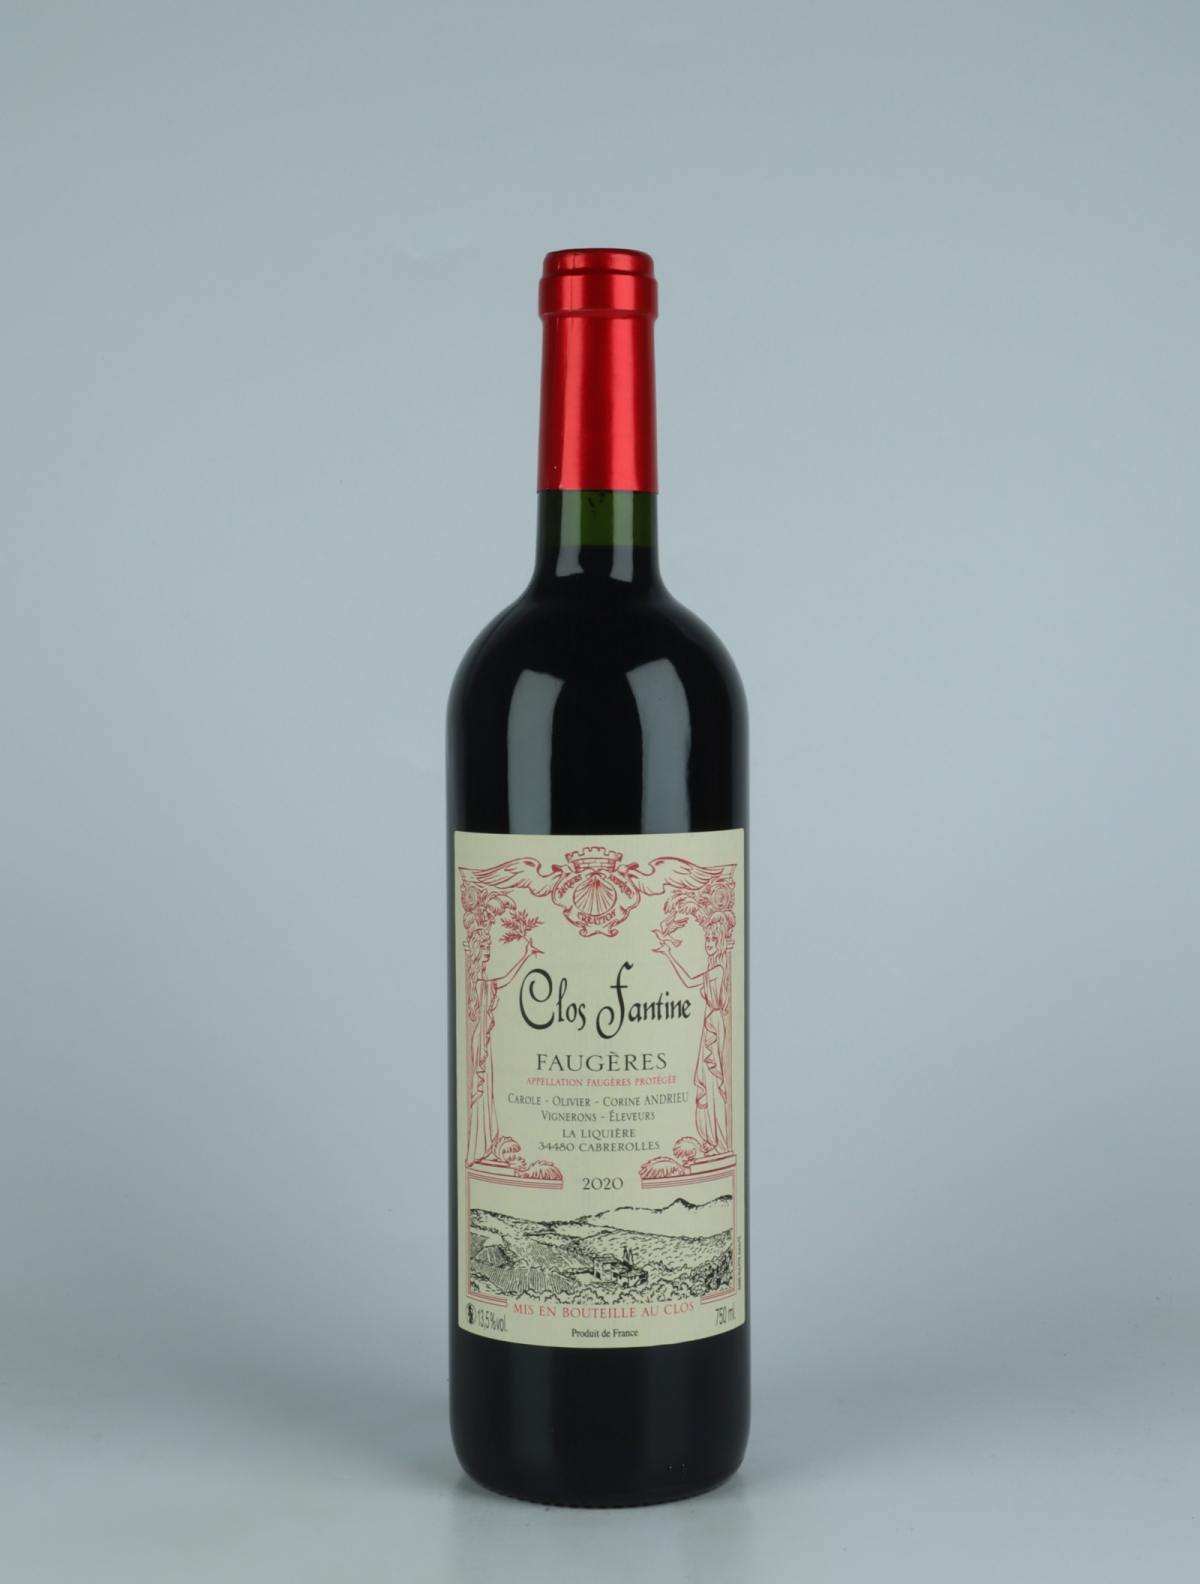 En flaske 2020 Faugères - Tradition Rødvin fra Clos Fantine, Languedoc i Frankrig